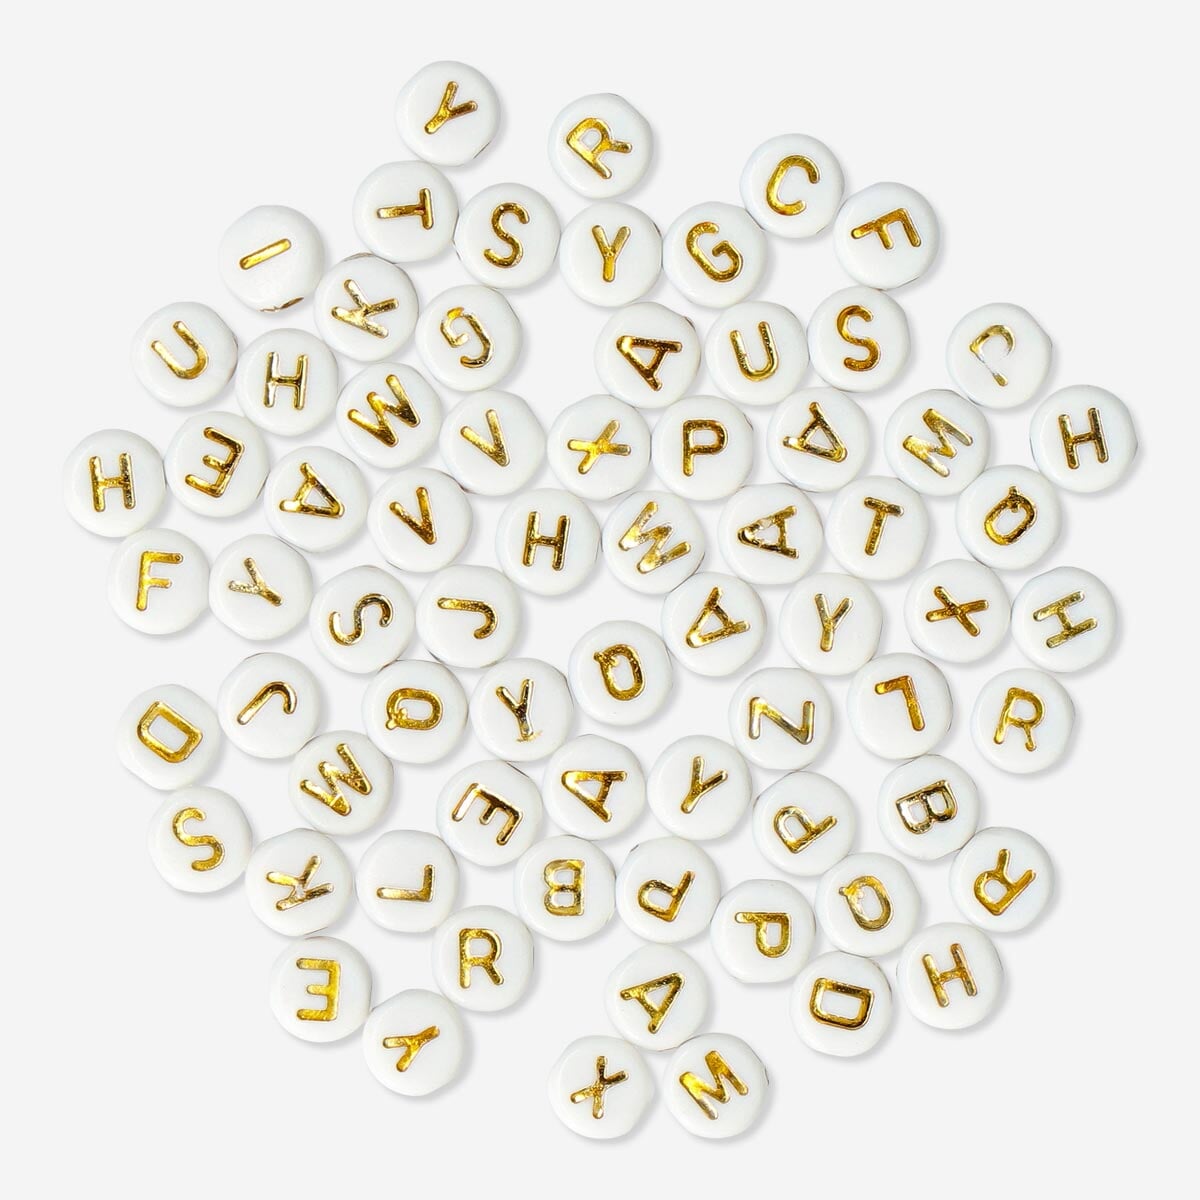 JPSOR 800 Pcs Letter Beads Alphabet Beads for Algeria